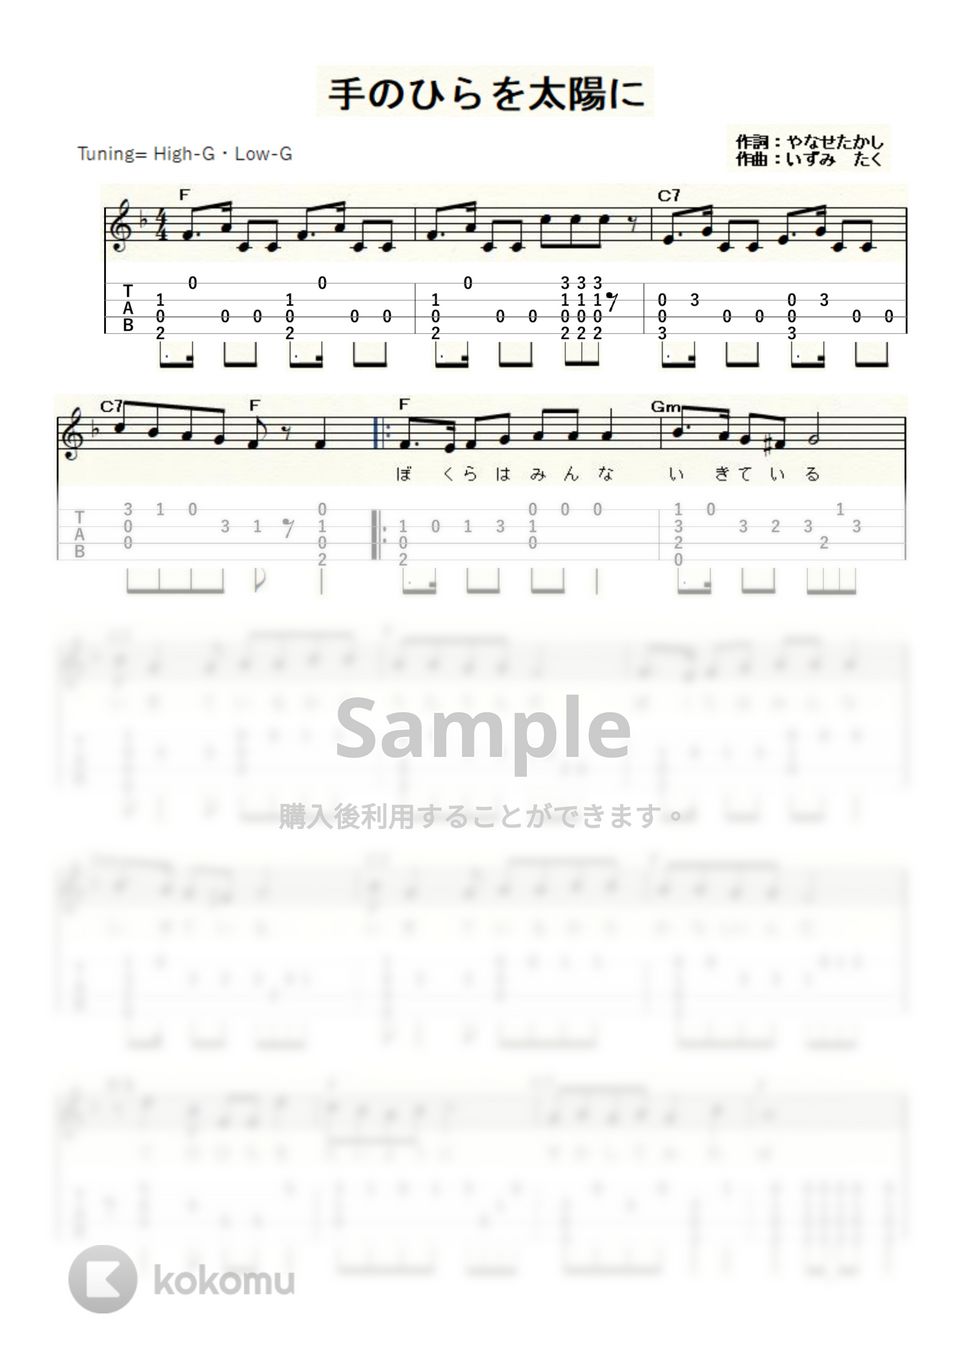 手のひらを太陽に (ｳｸﾚﾚｿﾛ/High-G・Low-G/中級) by ukulelepapa